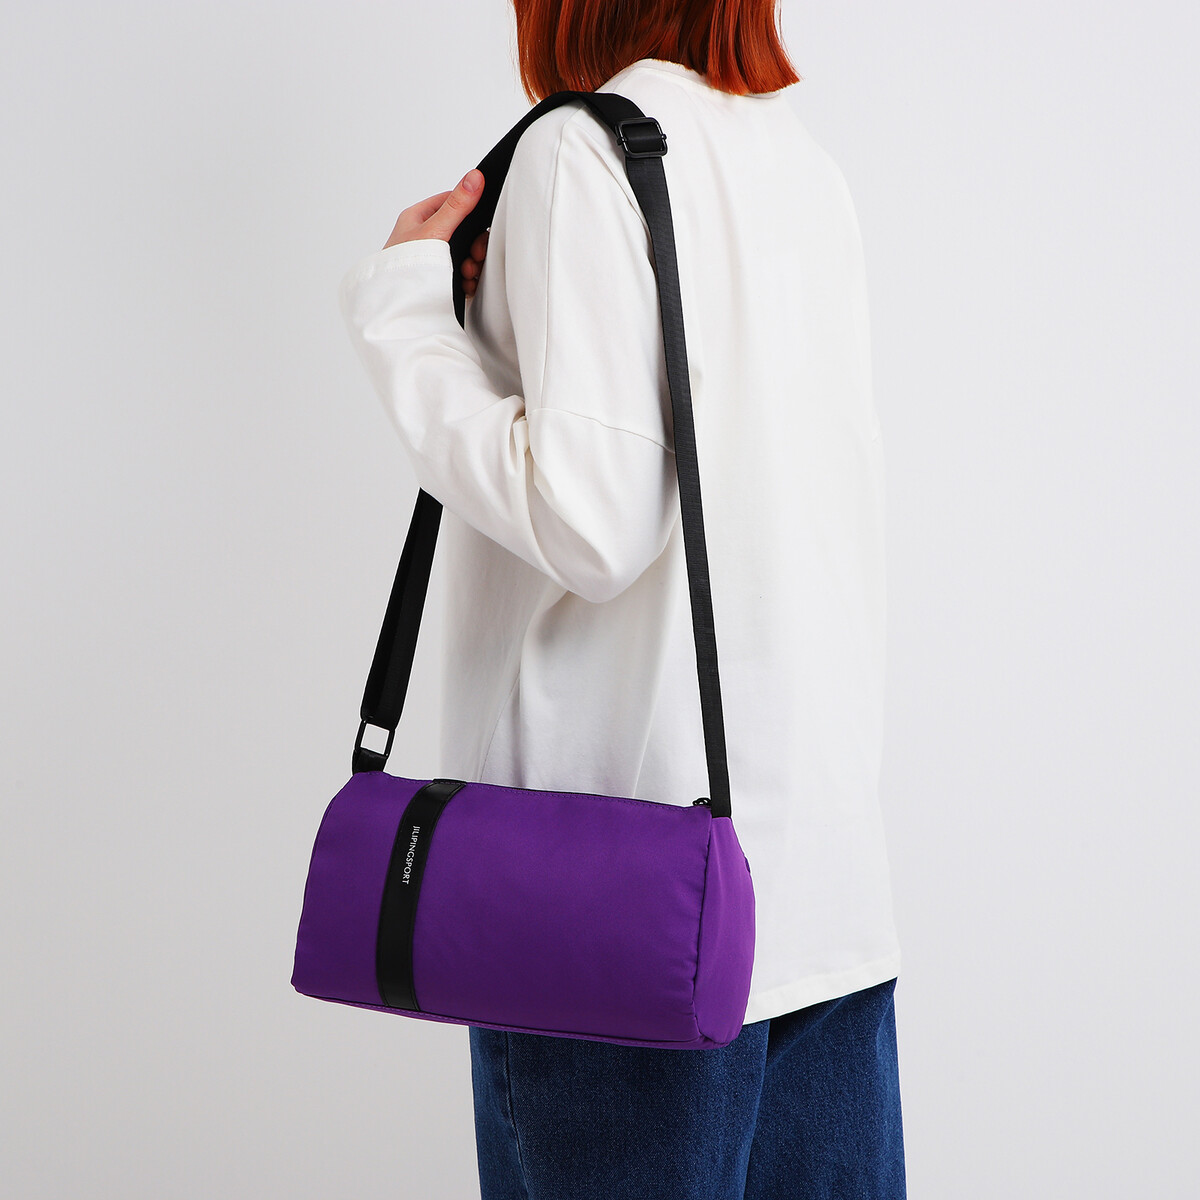 Сумка молодежная на молнии, цвет фиолетовый сумка для йоги sangh 48×25×18 см фиолетовый